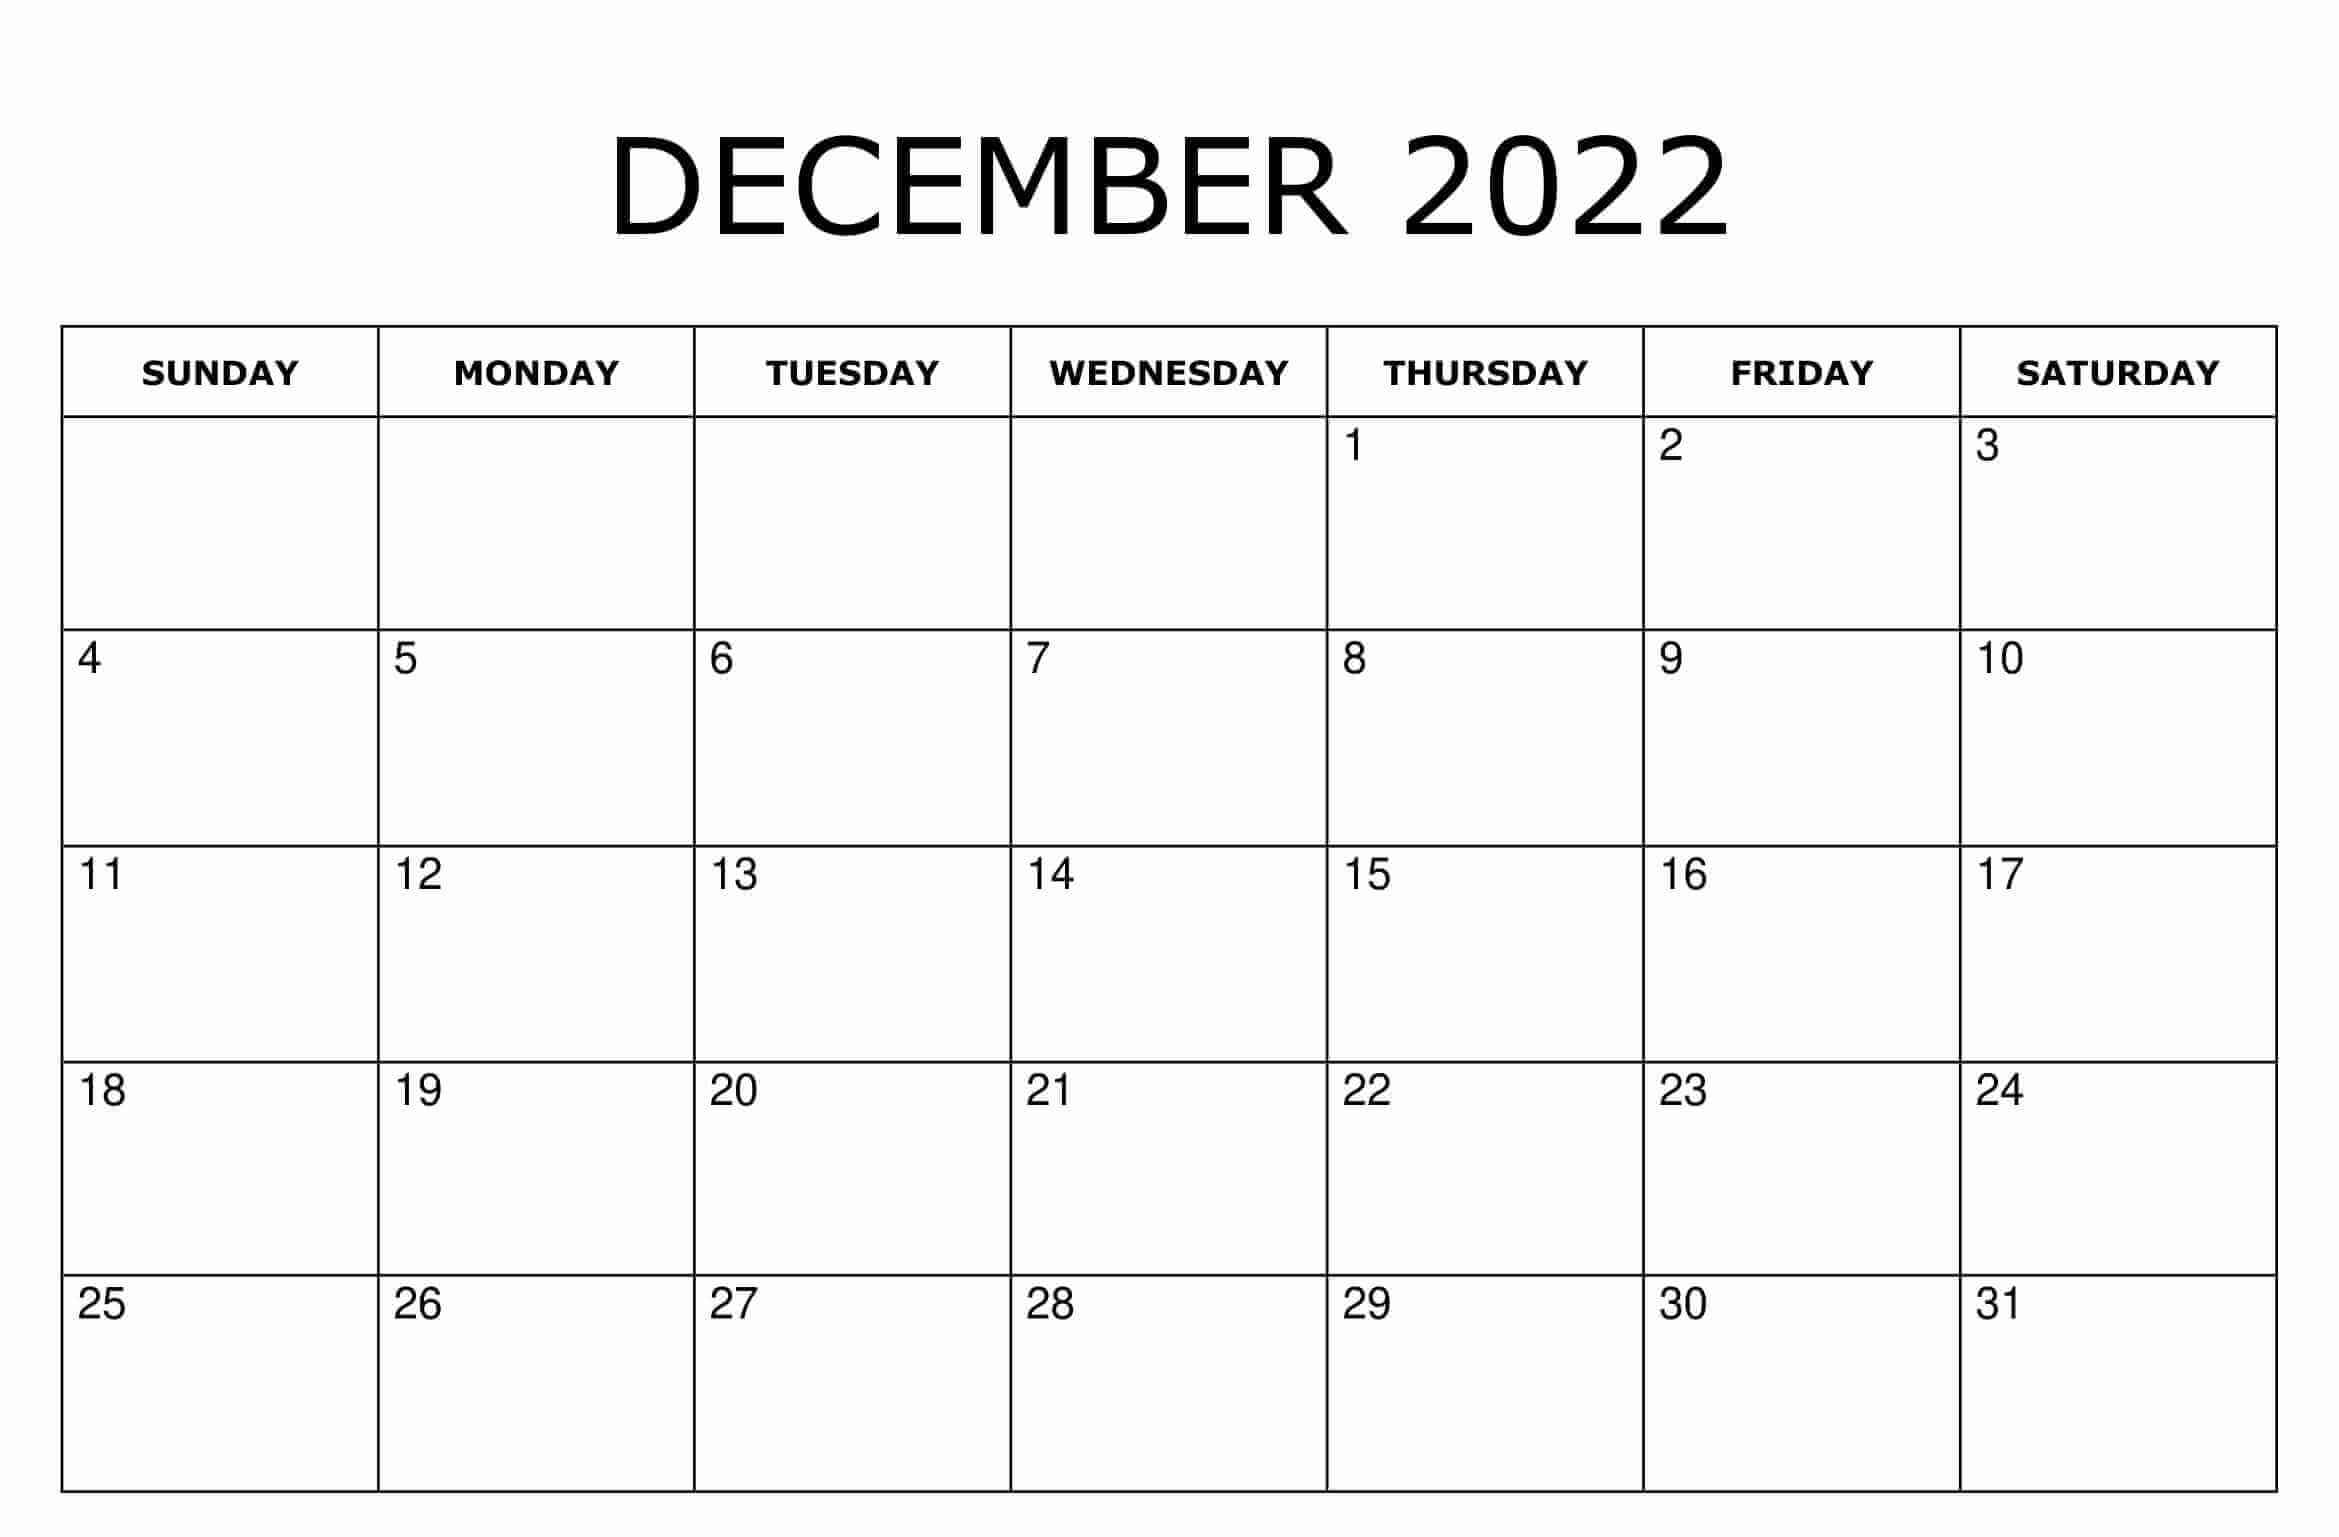 Free December 2022 Calendar Template